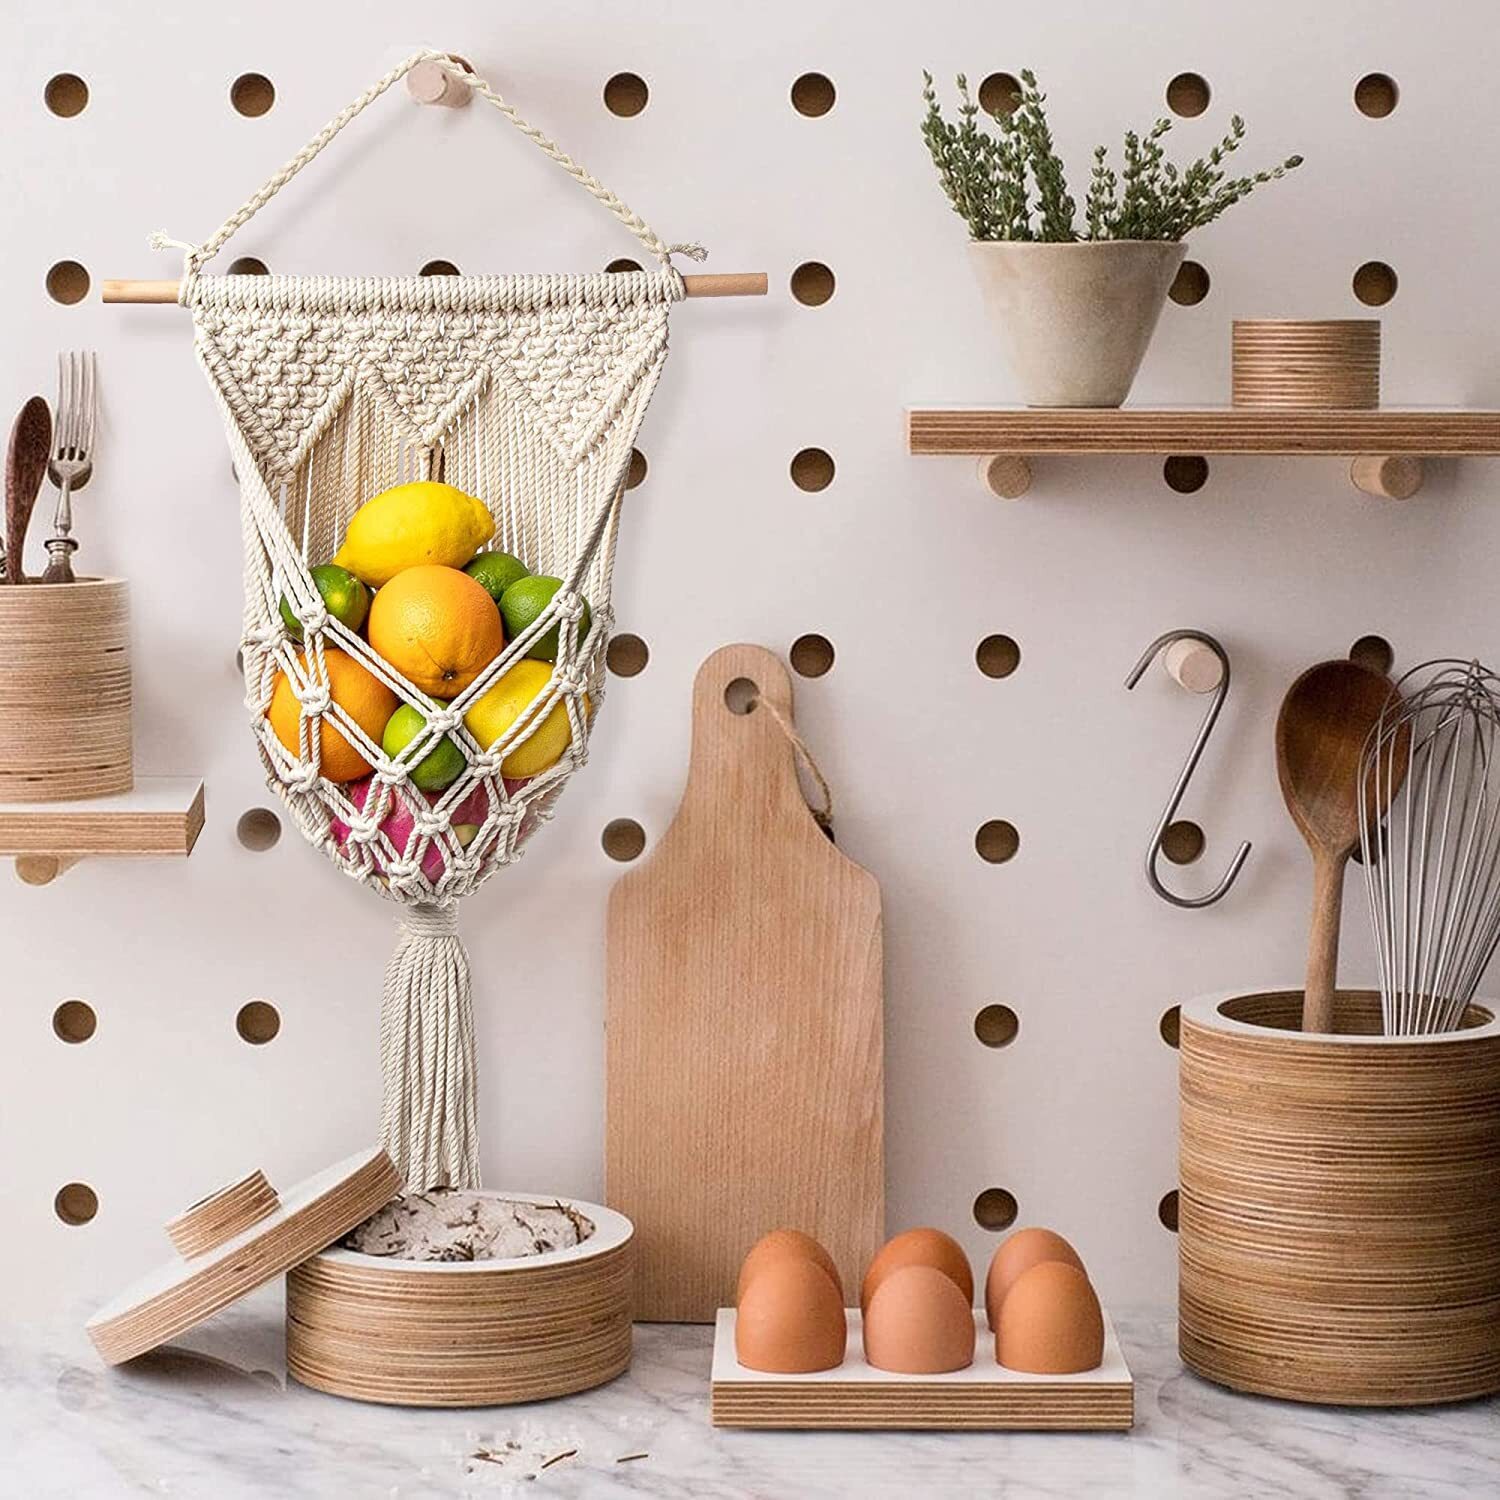 Macrame wall hanging fruit basket